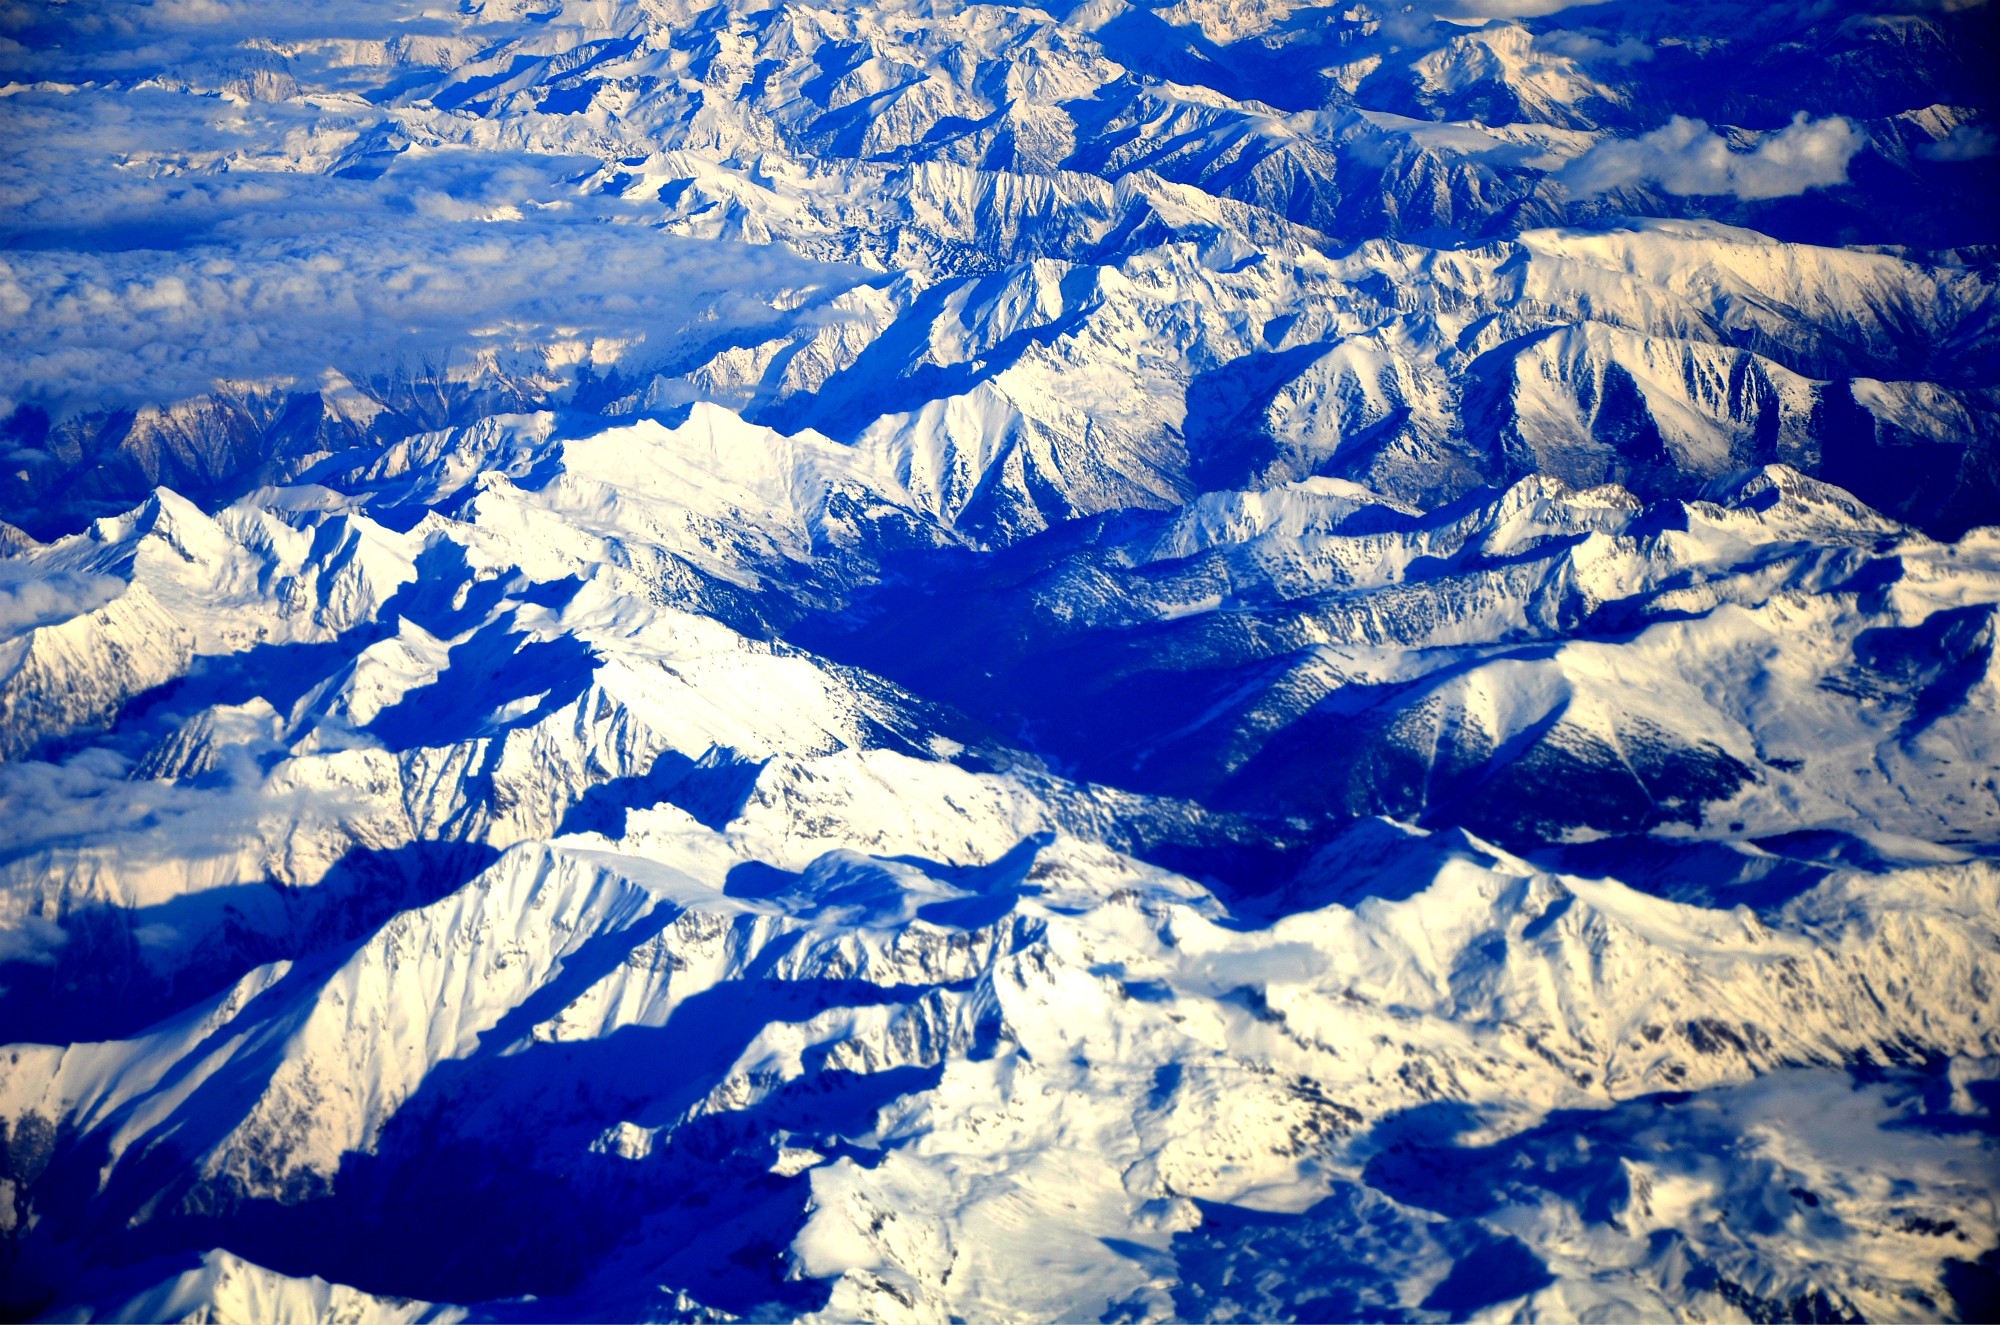 General 2000x1325 Alps landscape mountains nature